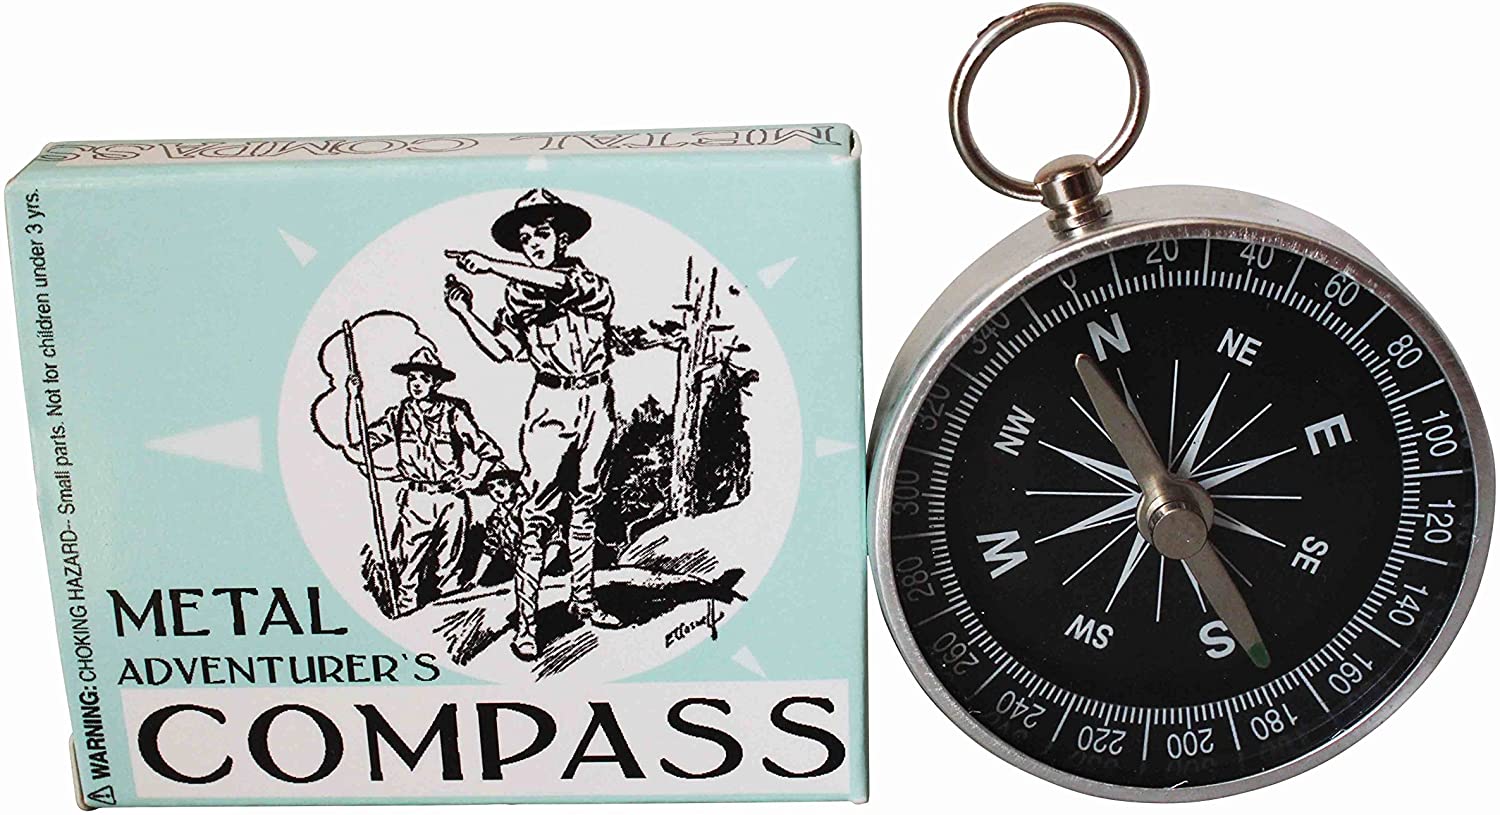 Metal Adventurer's Compass